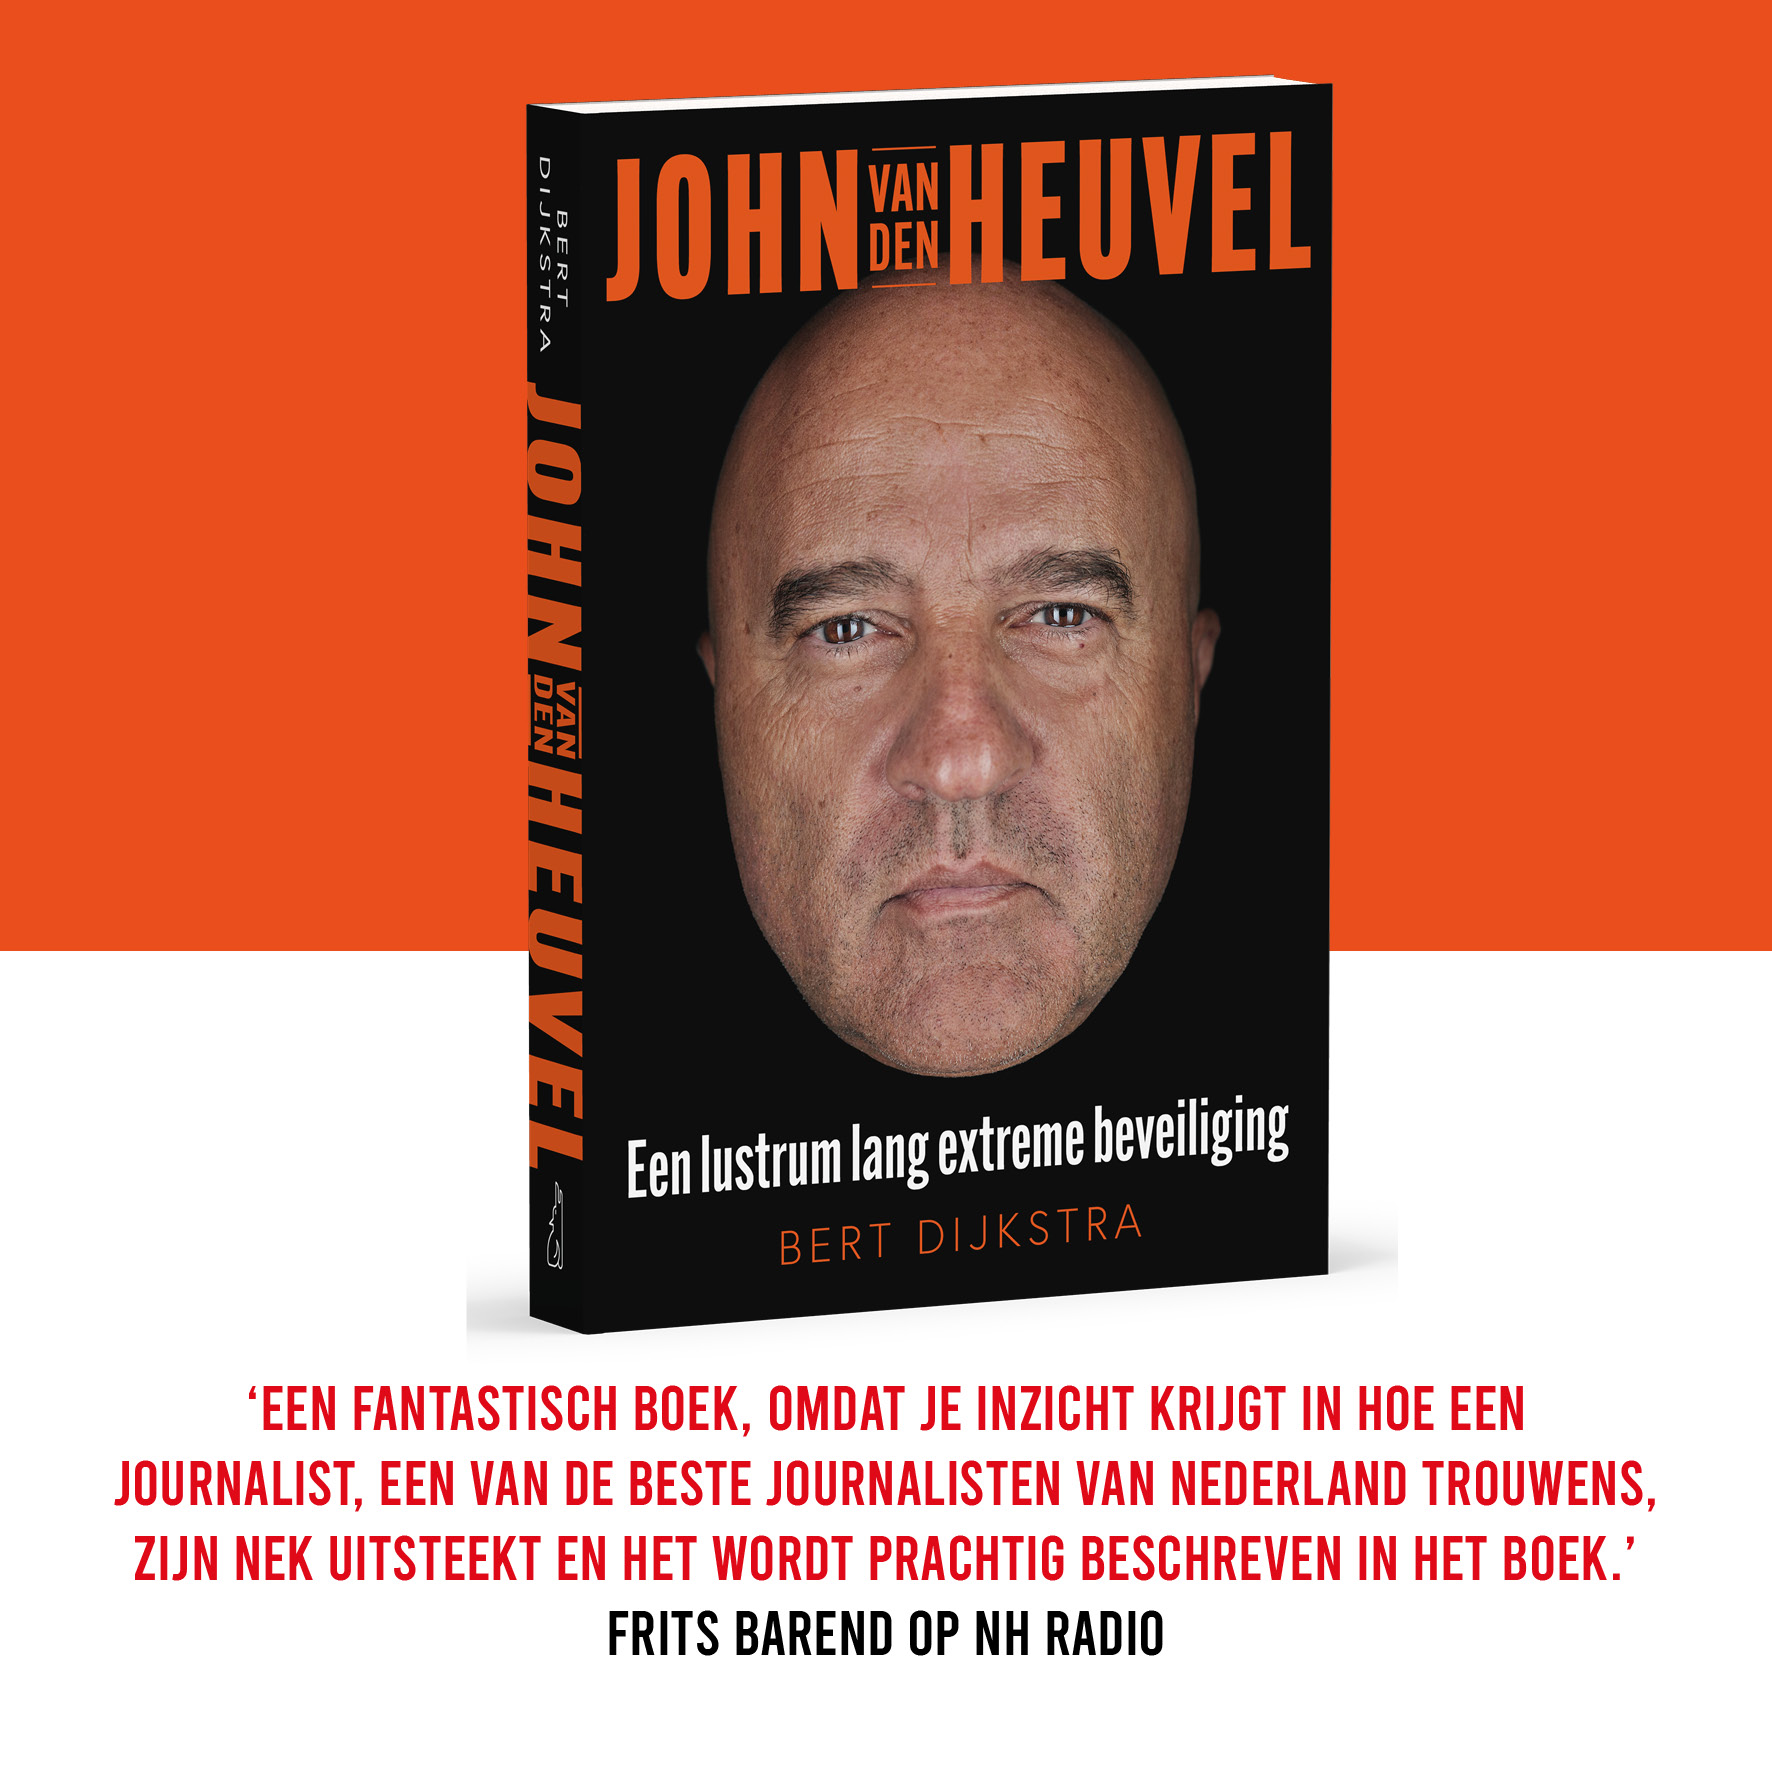 Frits Barend over John van den Heuvel